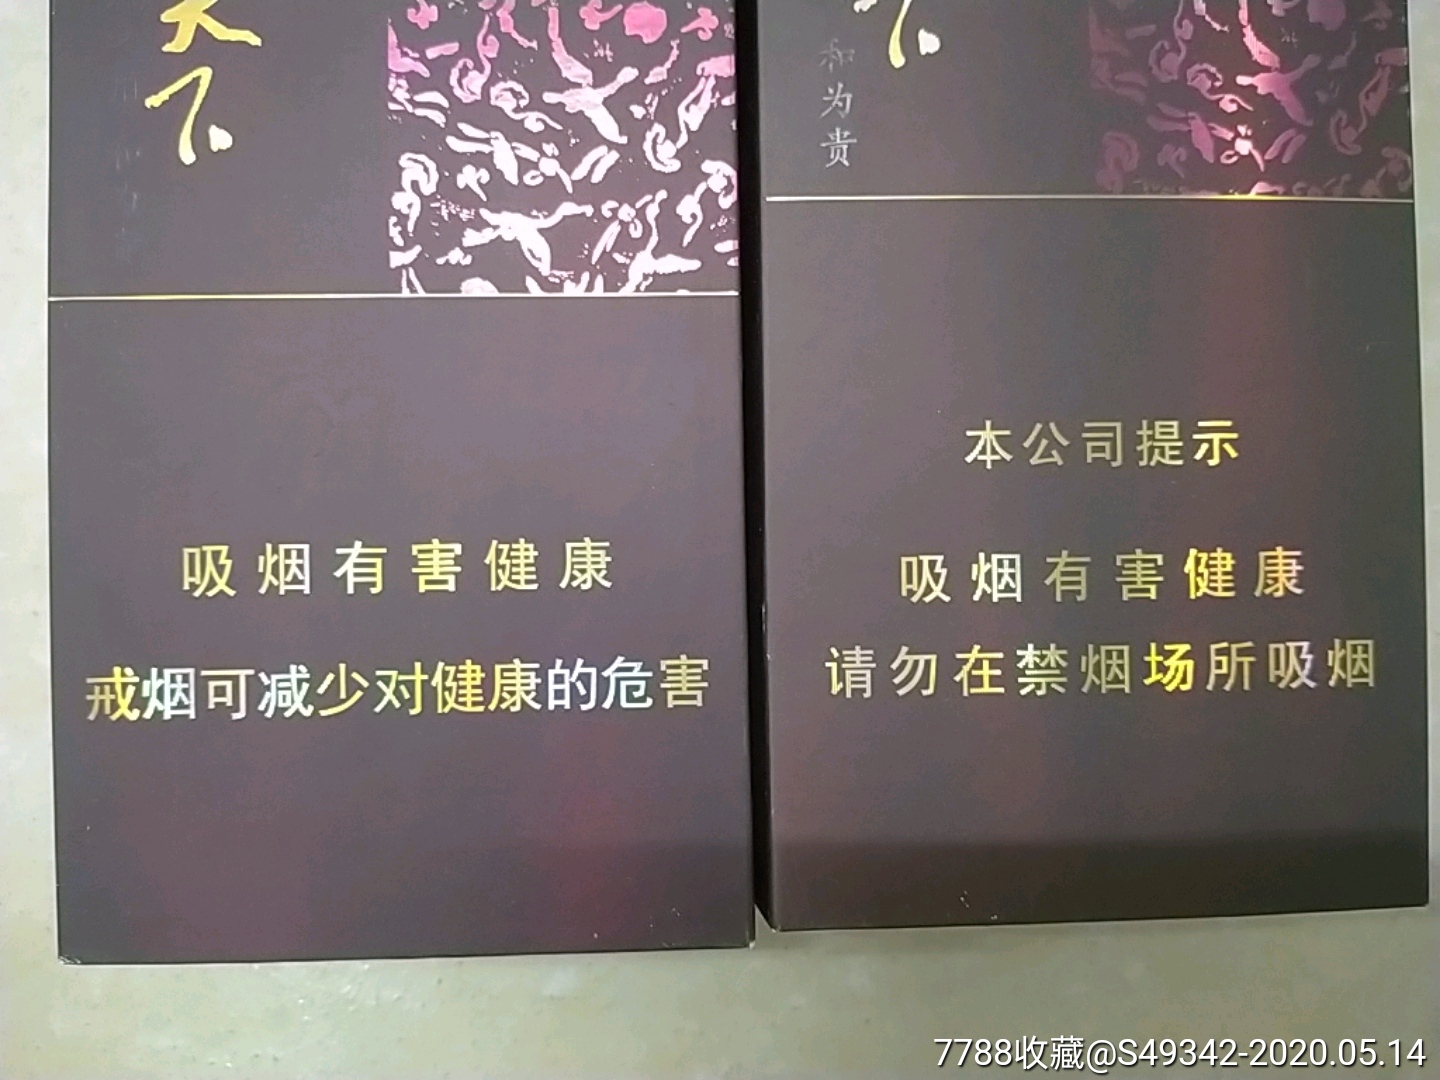 湖南中烟工业有限公司【和天下香烟】硬条烟盒,2百支装--2种不同合售